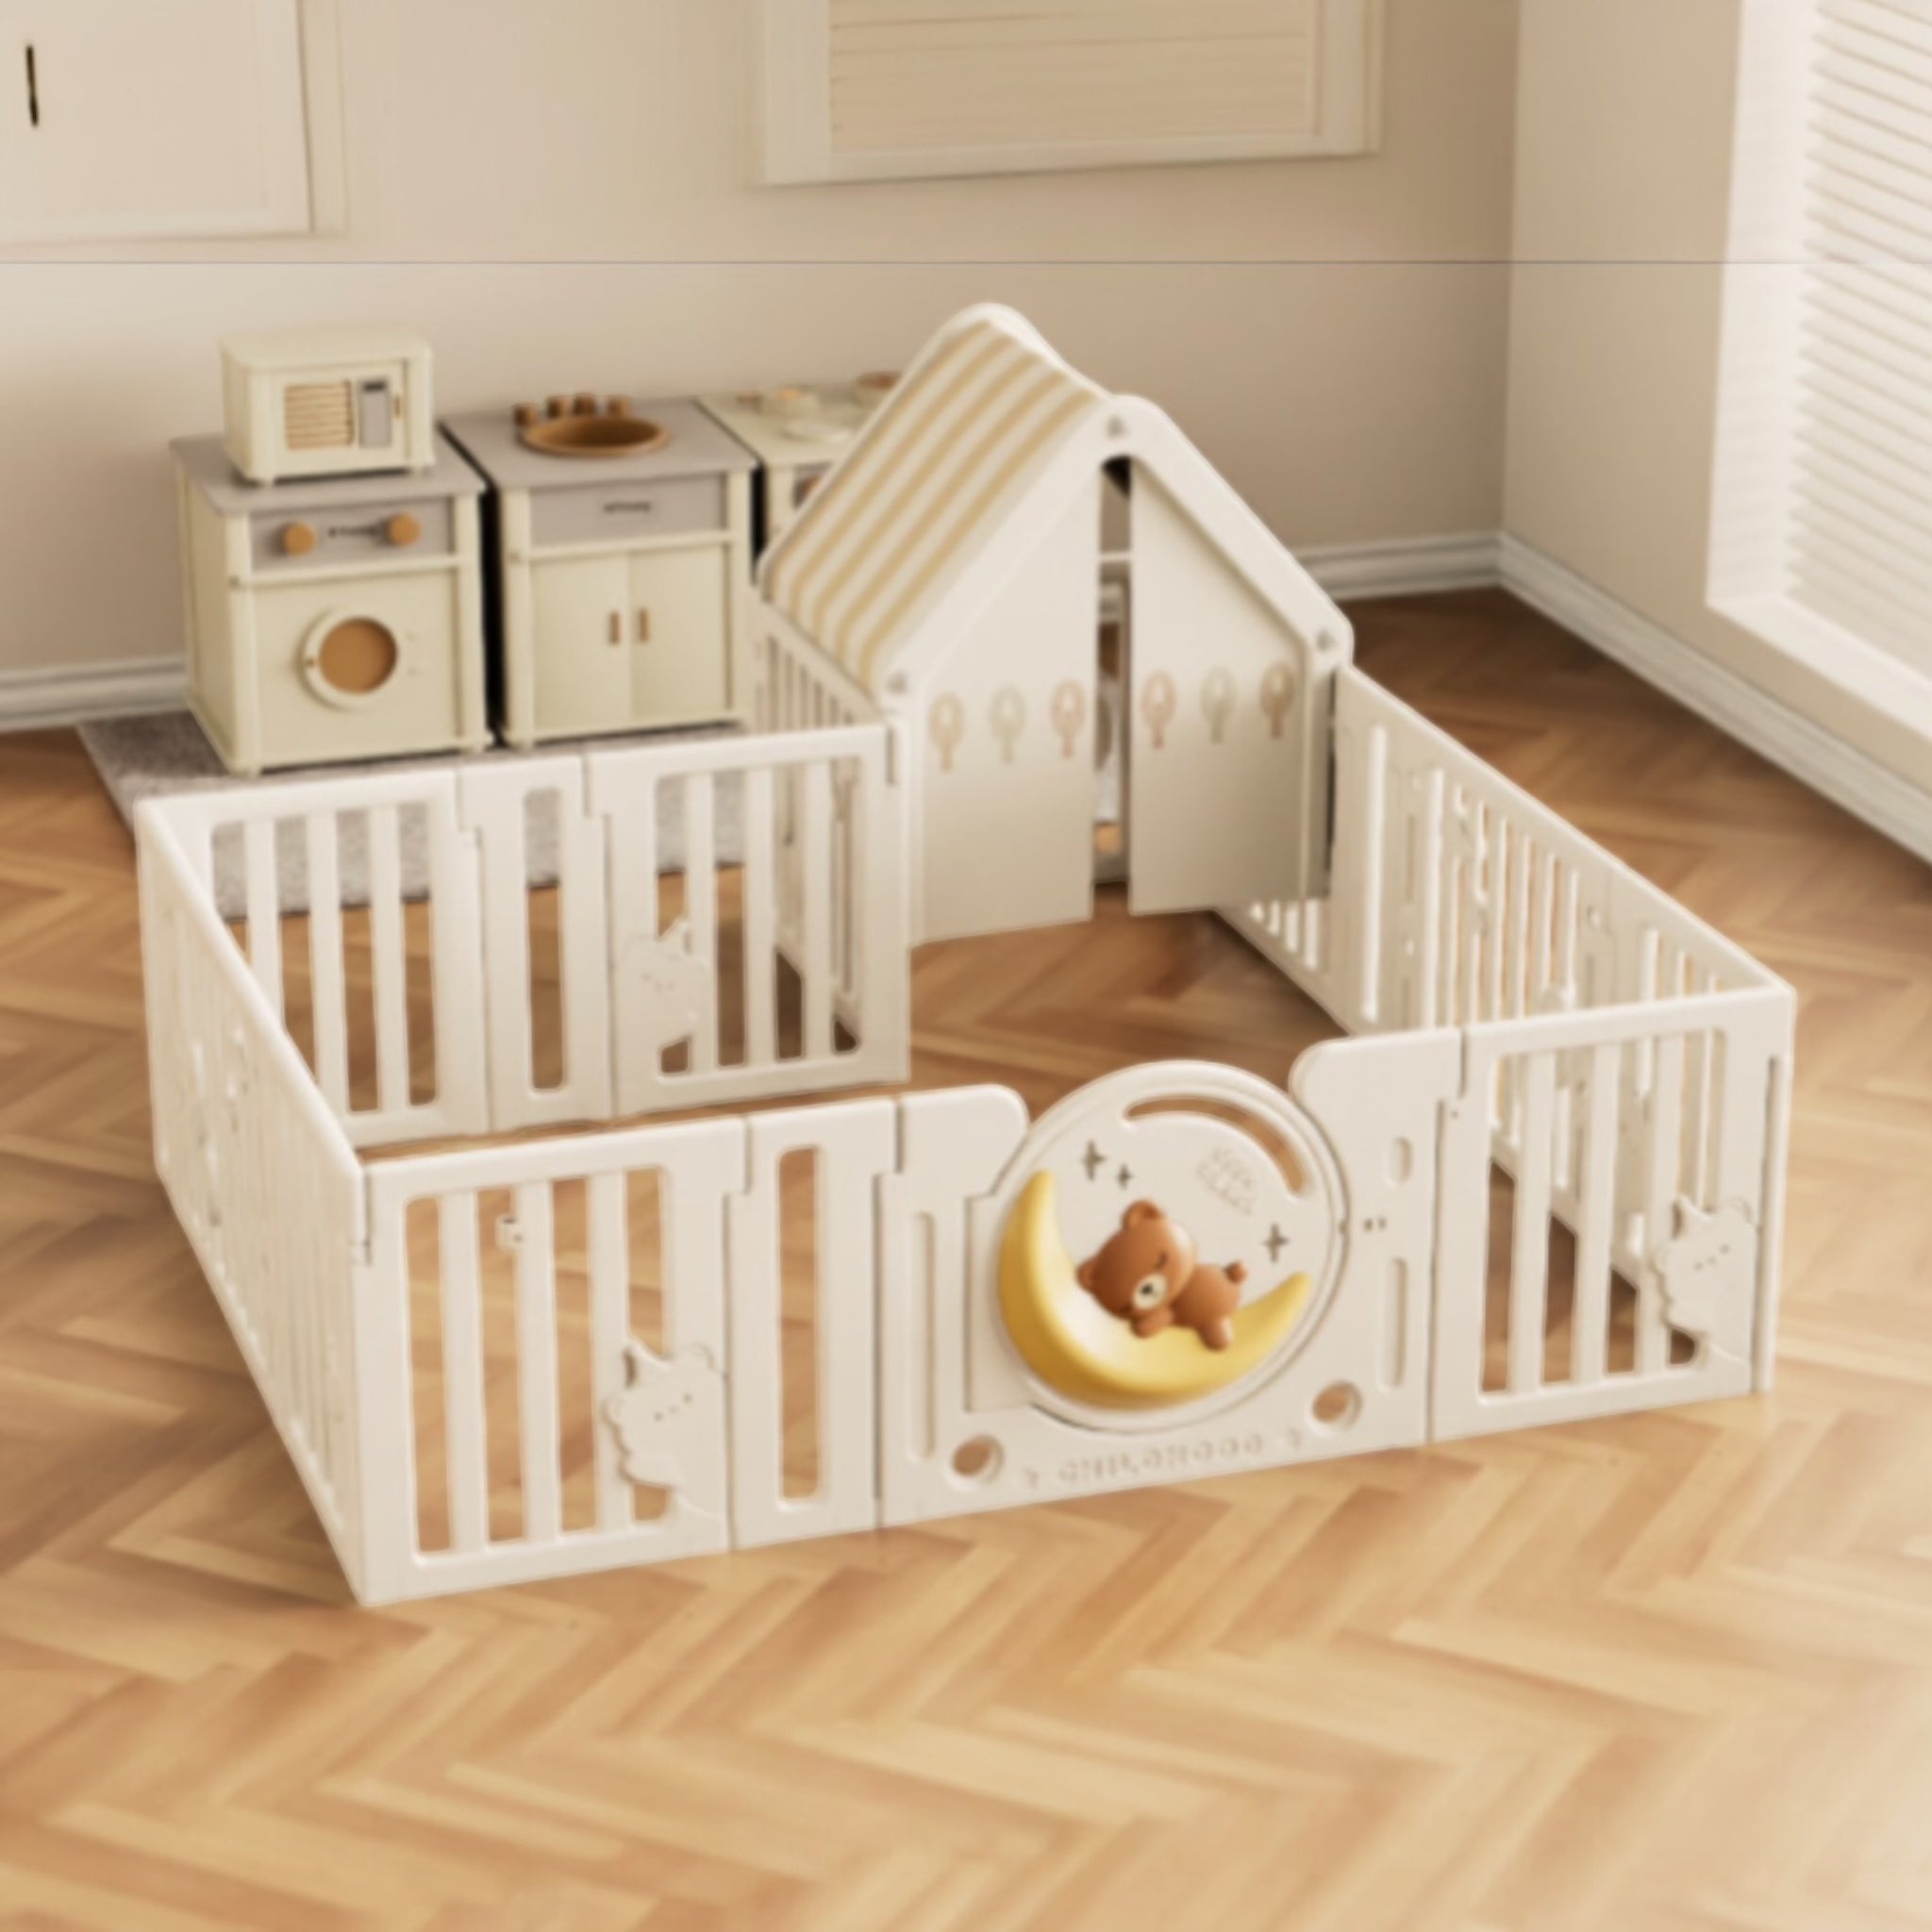 Teddy Bear 🧸 Moon 🌙 Cubs Playpen Cozy House For Little Bunny